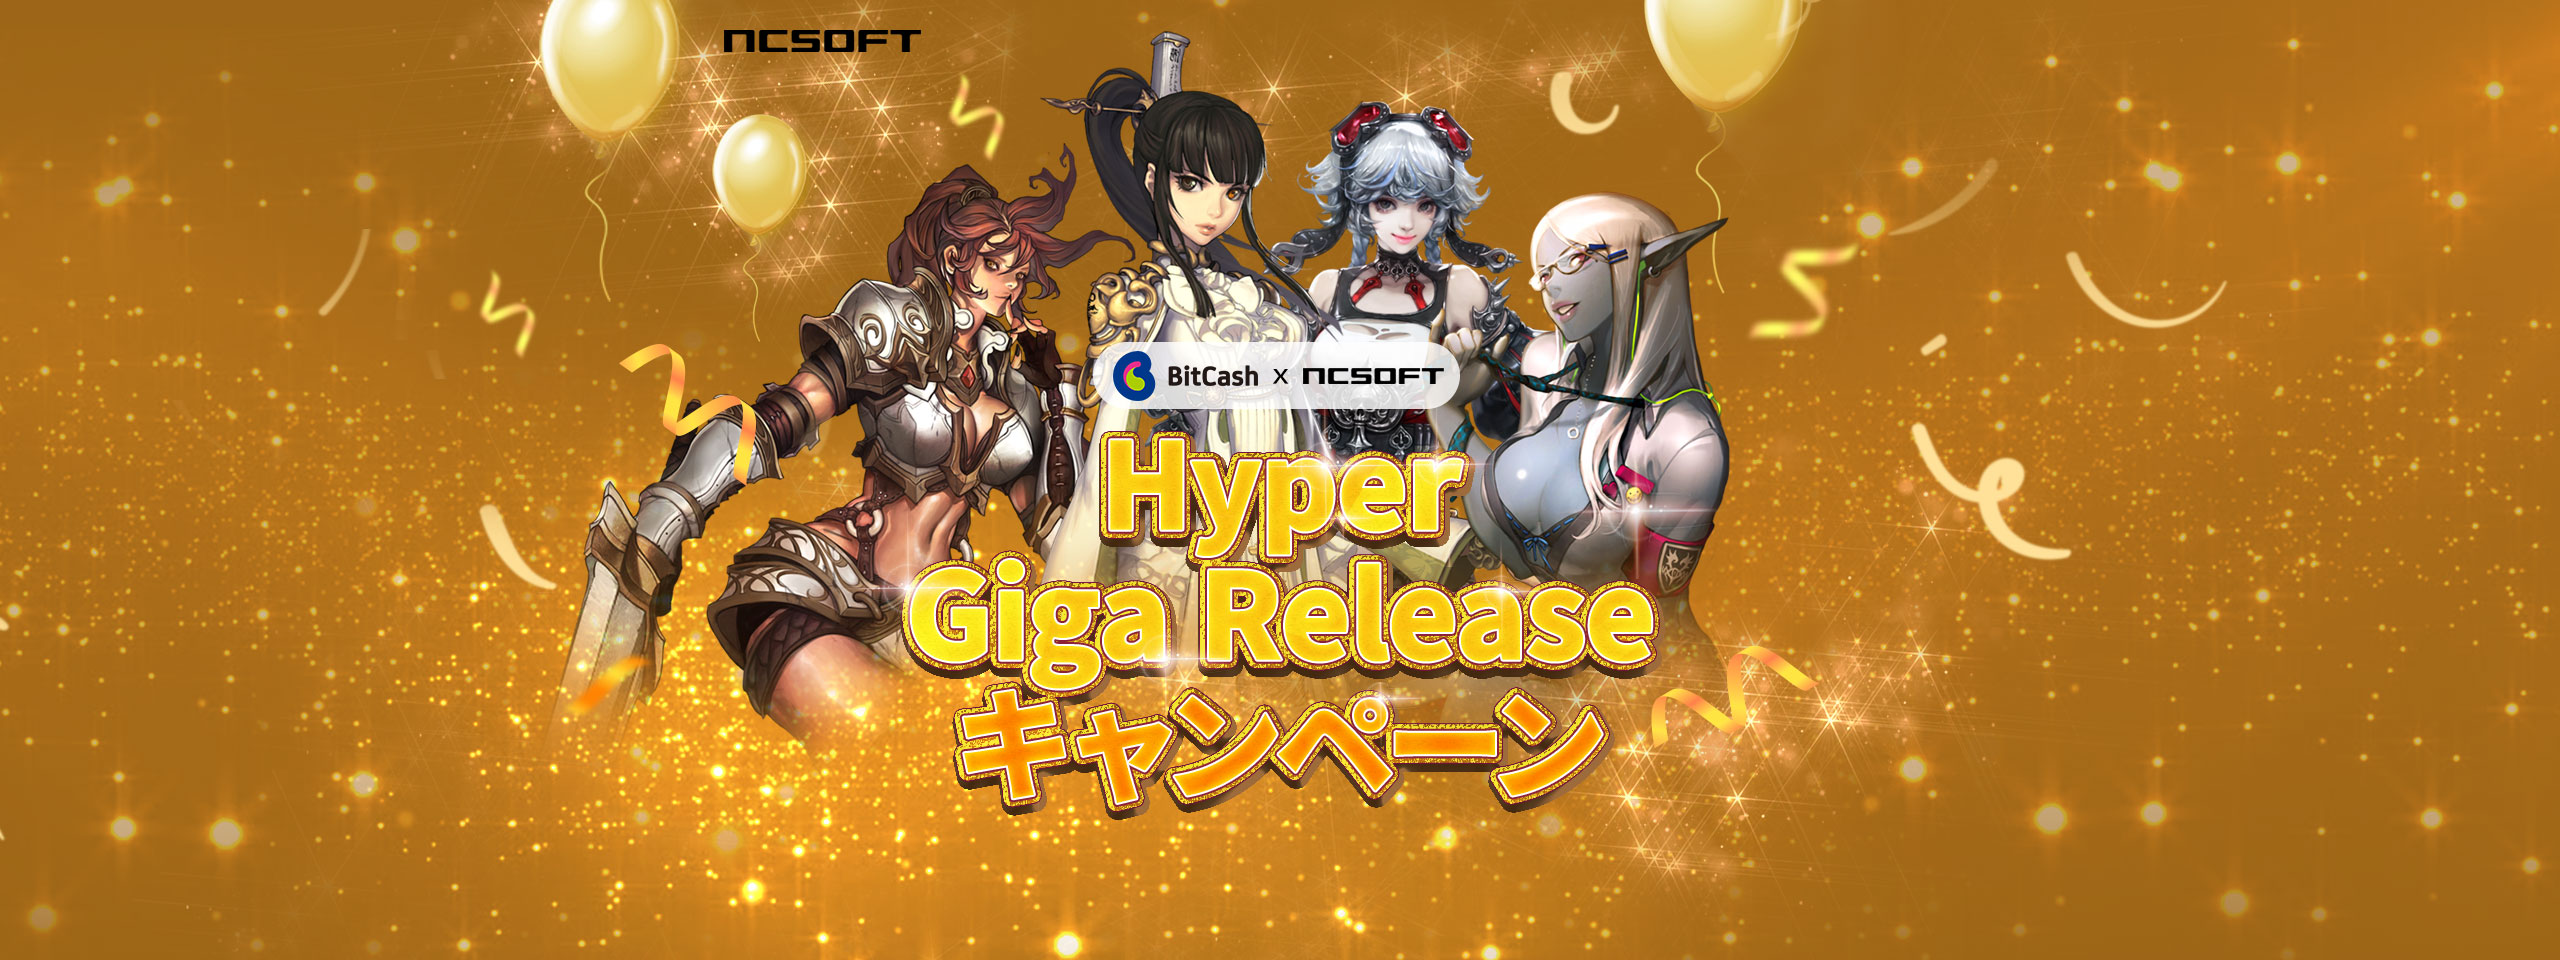 Hyper Mega Releaseフェスティバル